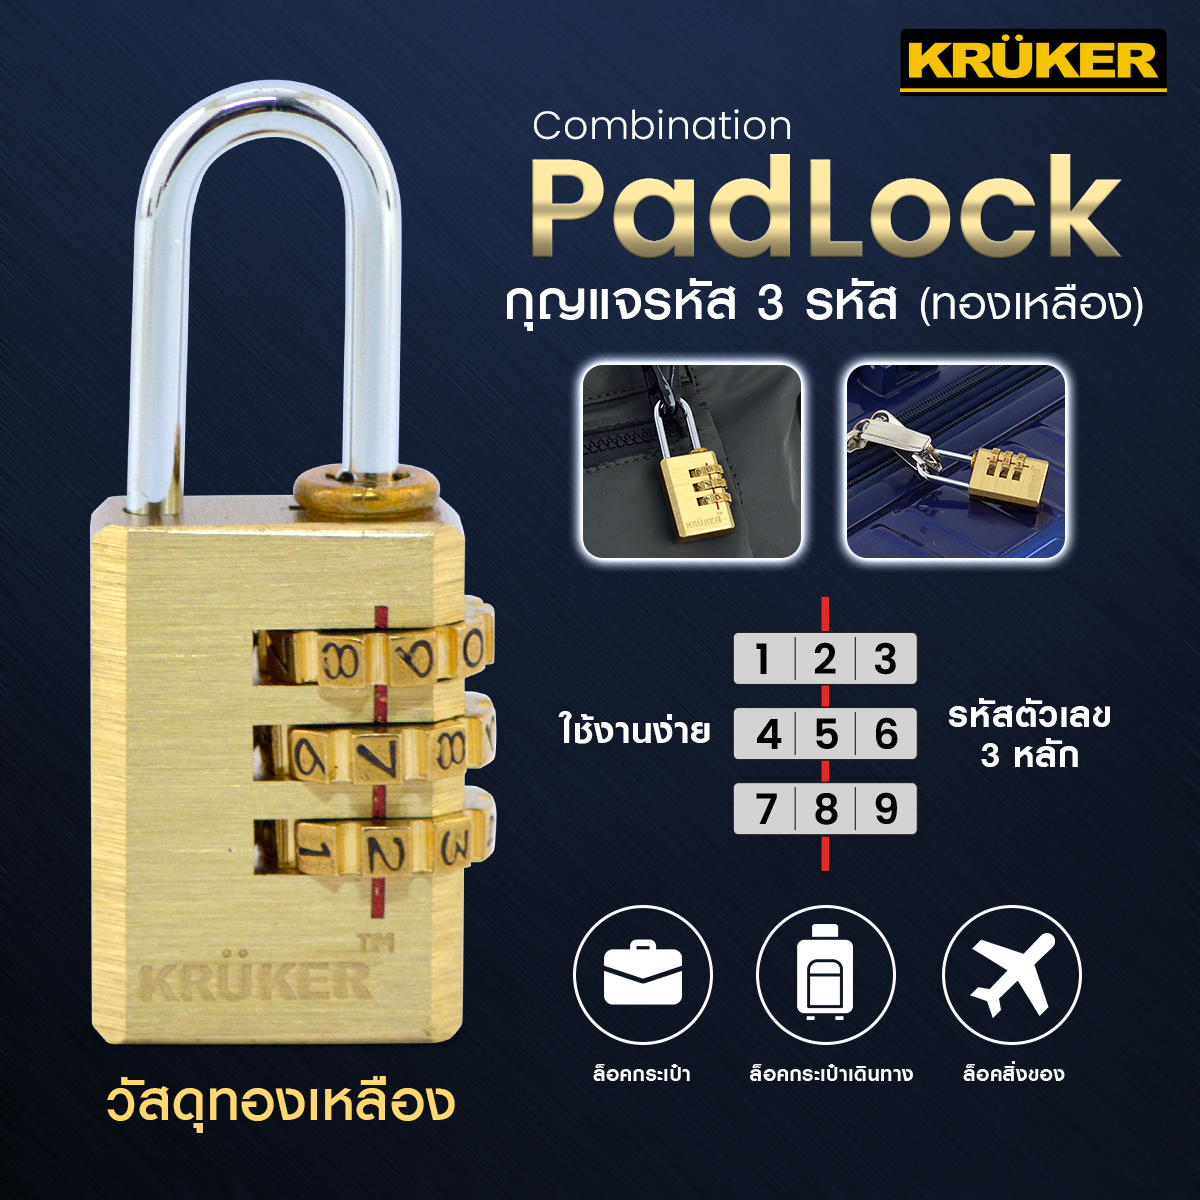 กุญแจล็อครหัส 4 หลัก กุญแจล็อคกระเป๋าเดินทาง กุญแจแบบตั้งรหัสผ่าน  กุญแจล็อคบ้าน กุญแจประตูบ